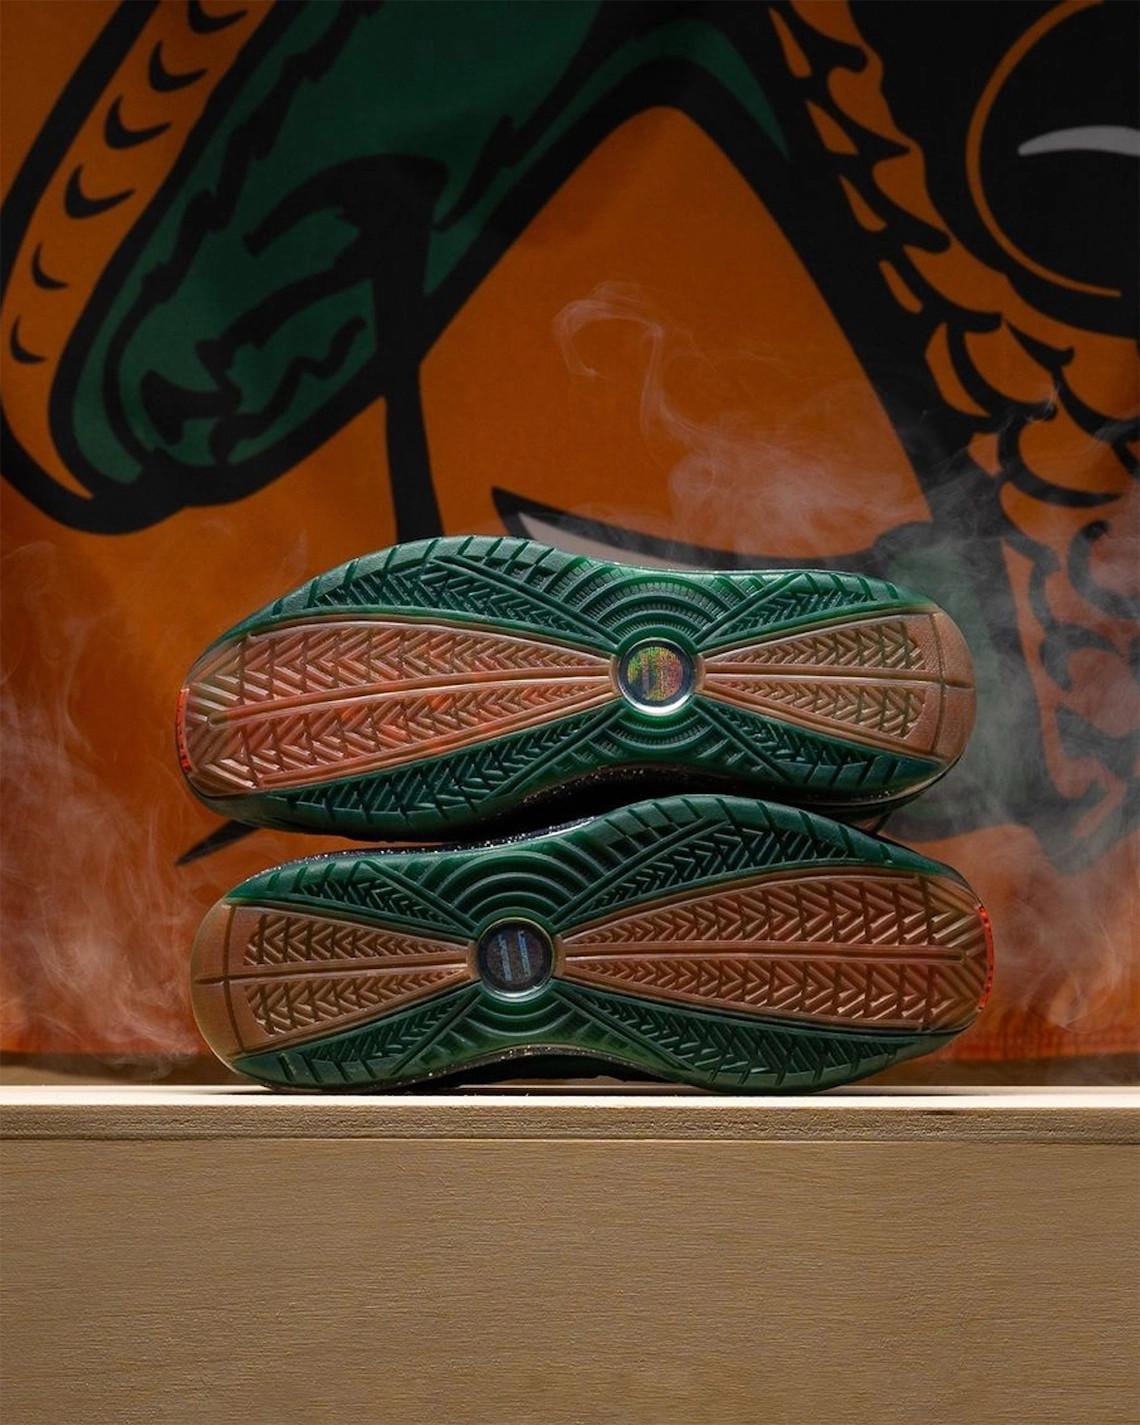 La FAMU reçoit une Nike LeBron 7 "Gorge Green".